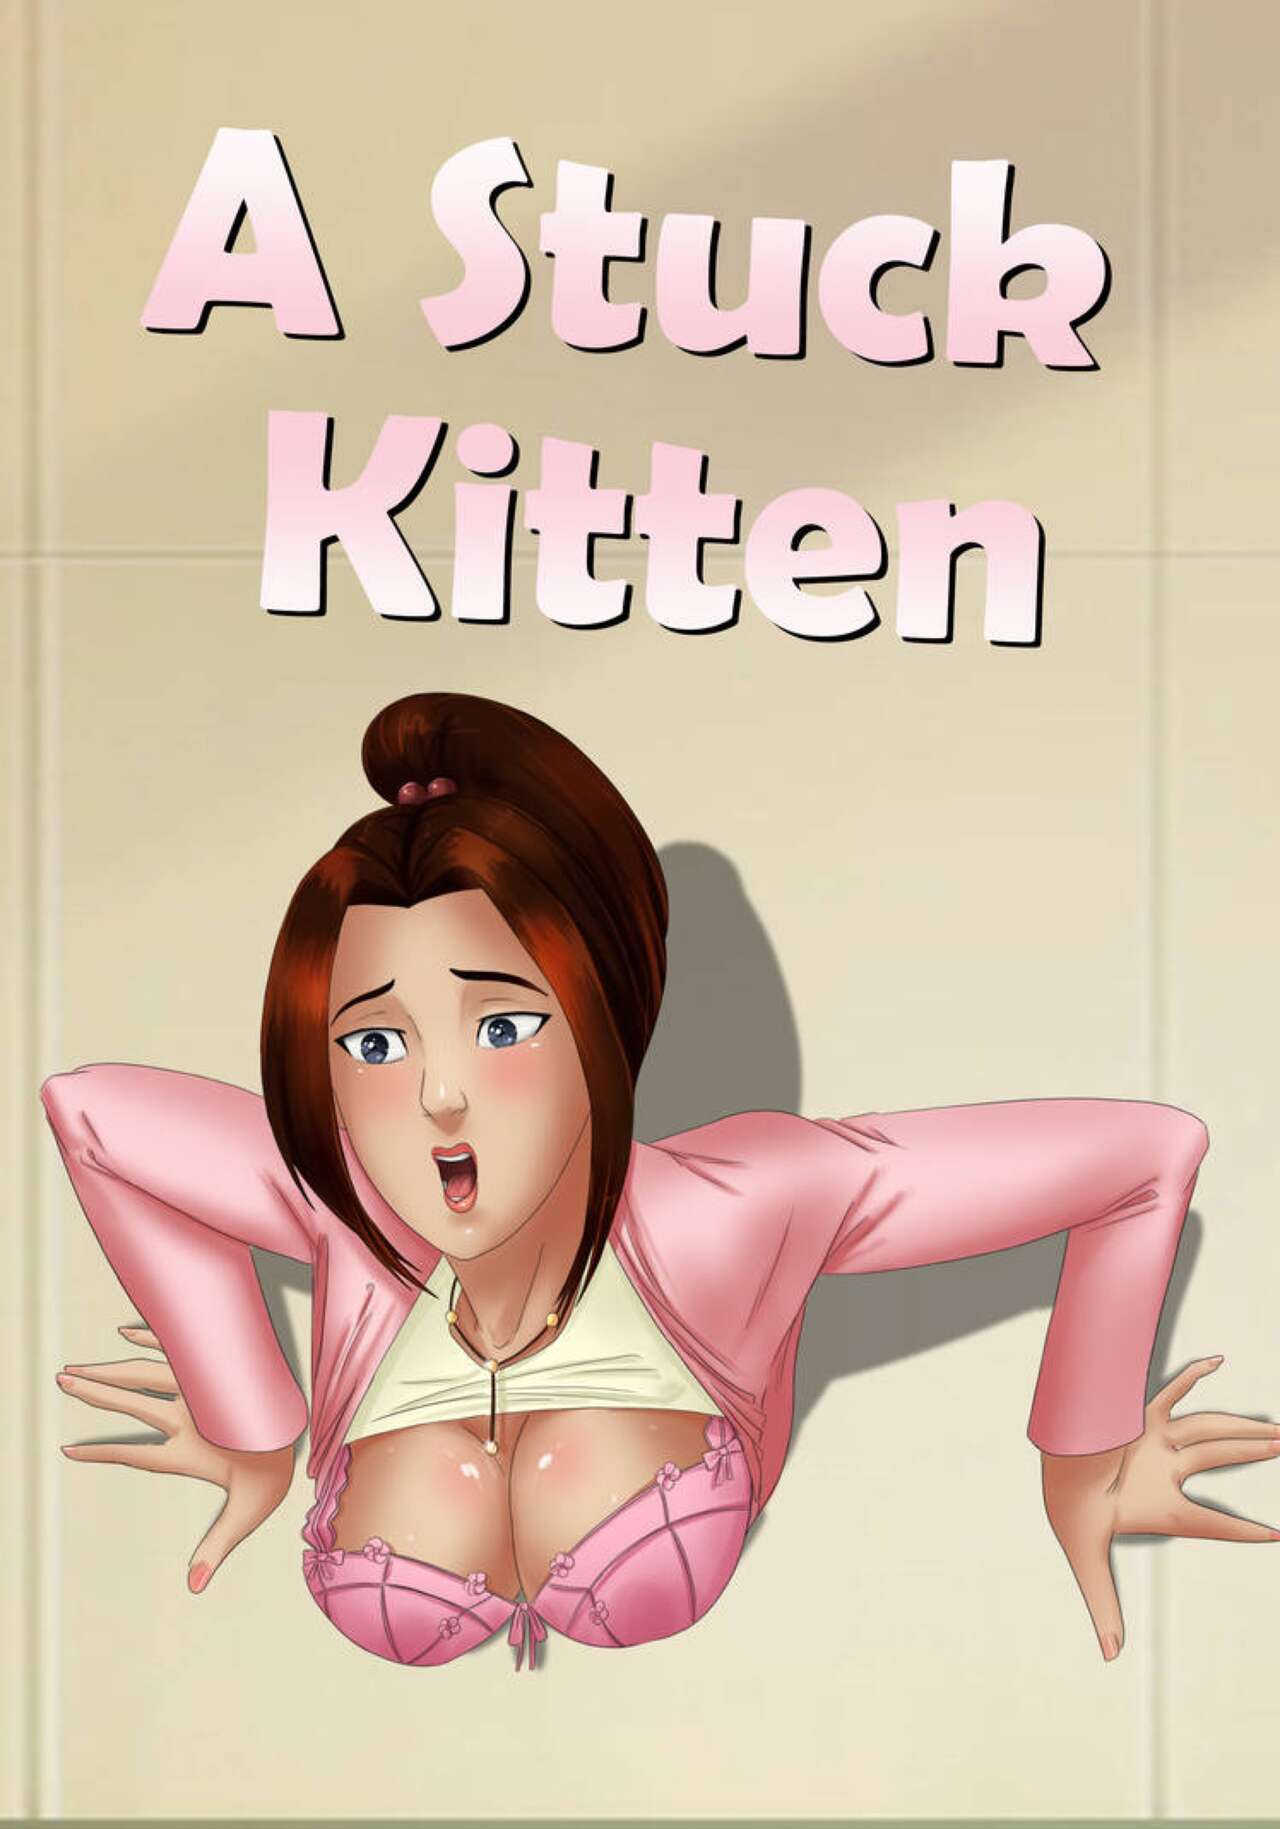 A Stuck Kitten – X-Men: Evolution by Inuyuru